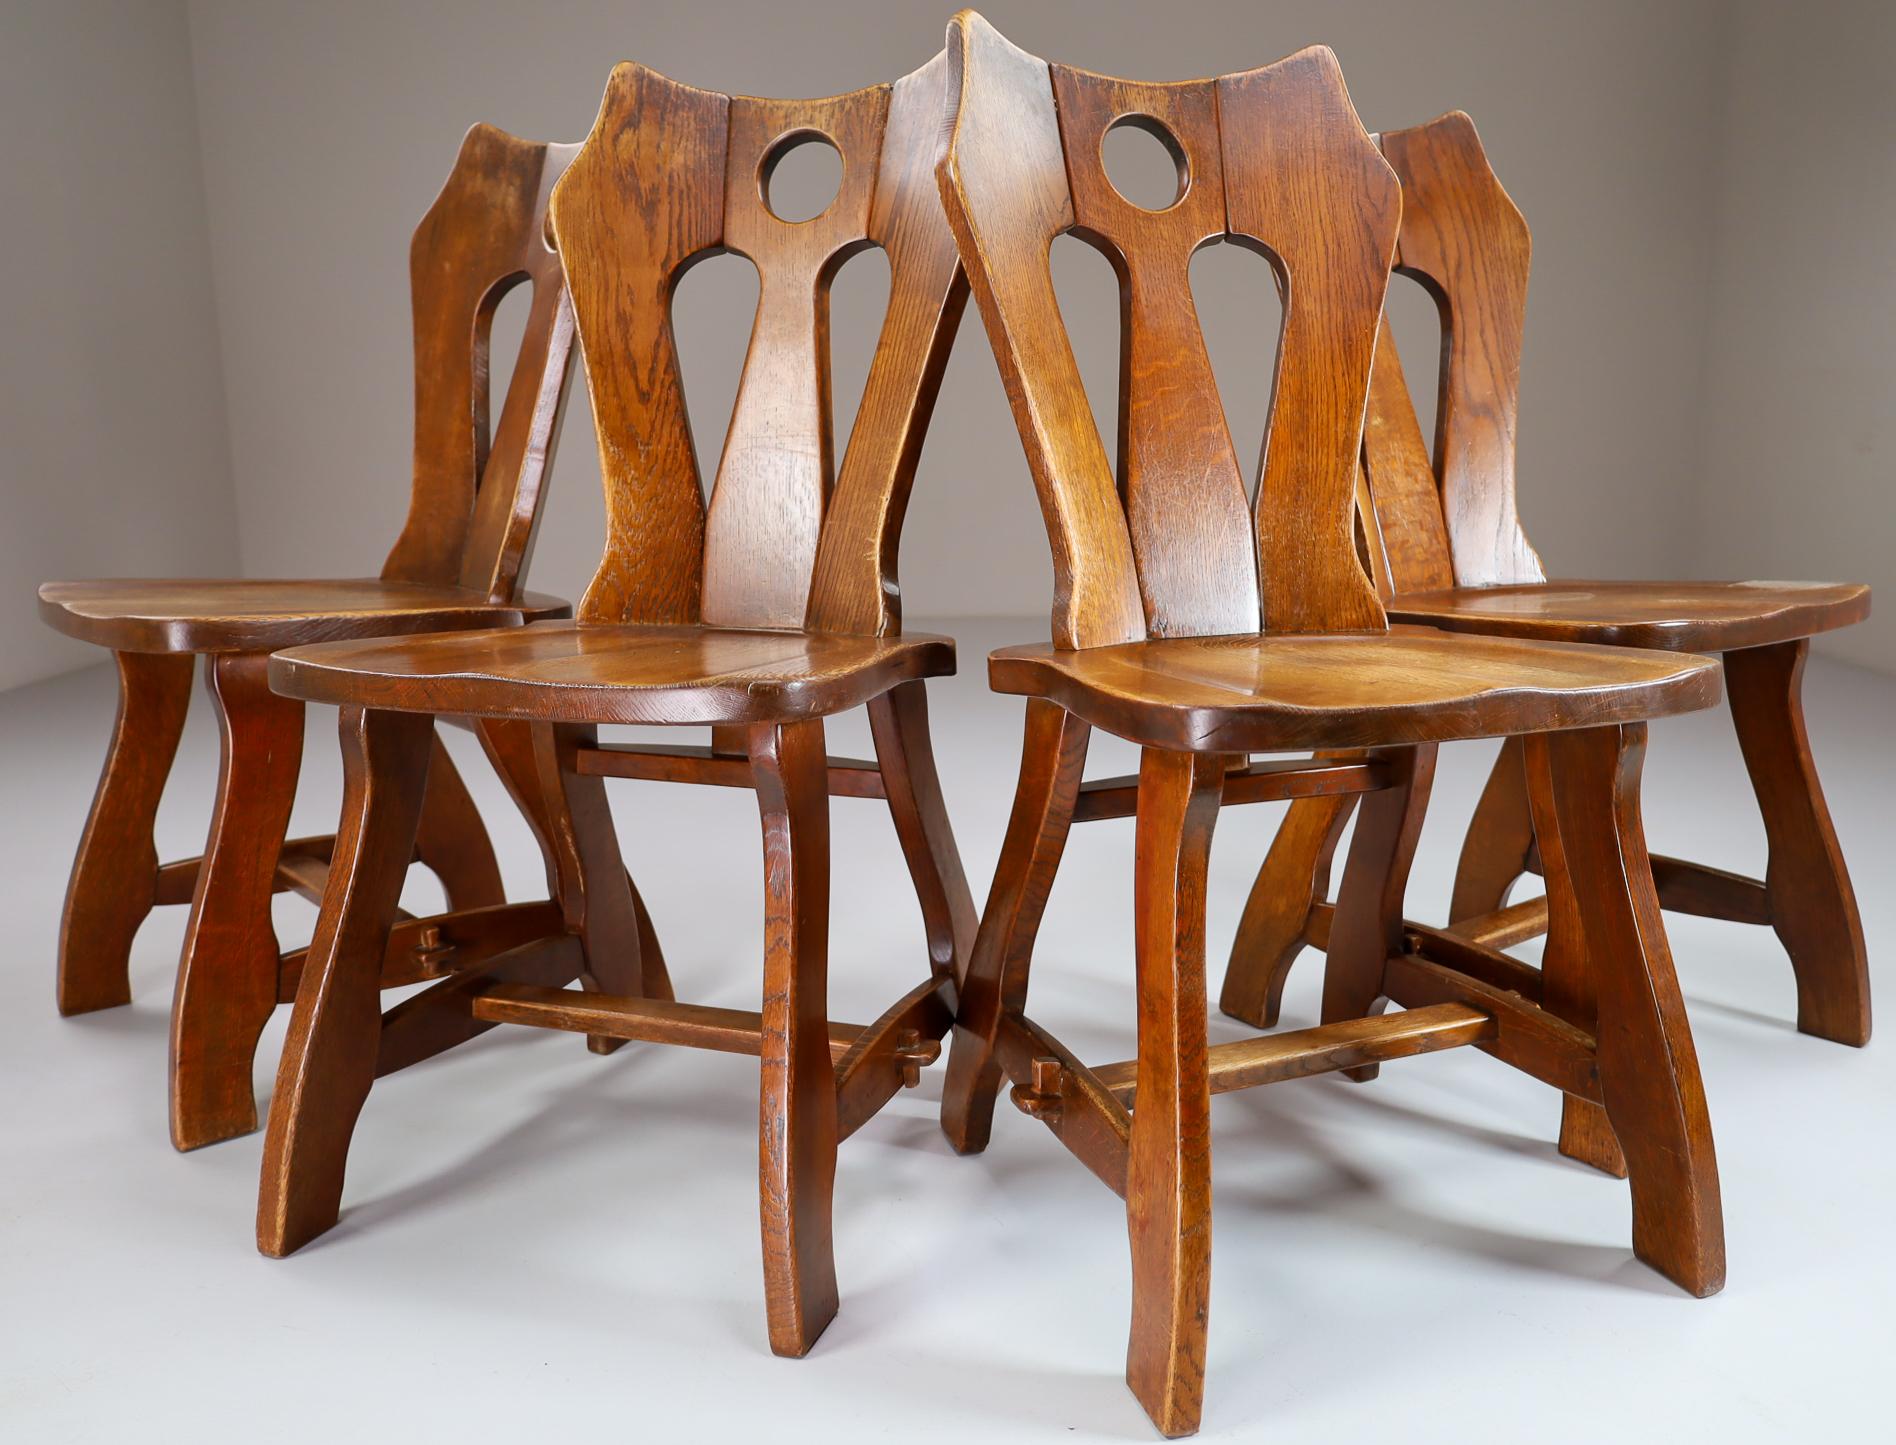 Satz von vier brutalistischen Stühlen aus patinierter Eiche, Belgien, 1960er Jahre.

Ein Satz von vier Esszimmerstühlen aus Holz. Diese Stühle sind aus Eichenholz gefertigt und werden von Hand skulptural bearbeitet. Die Handwerkskunst ist immer